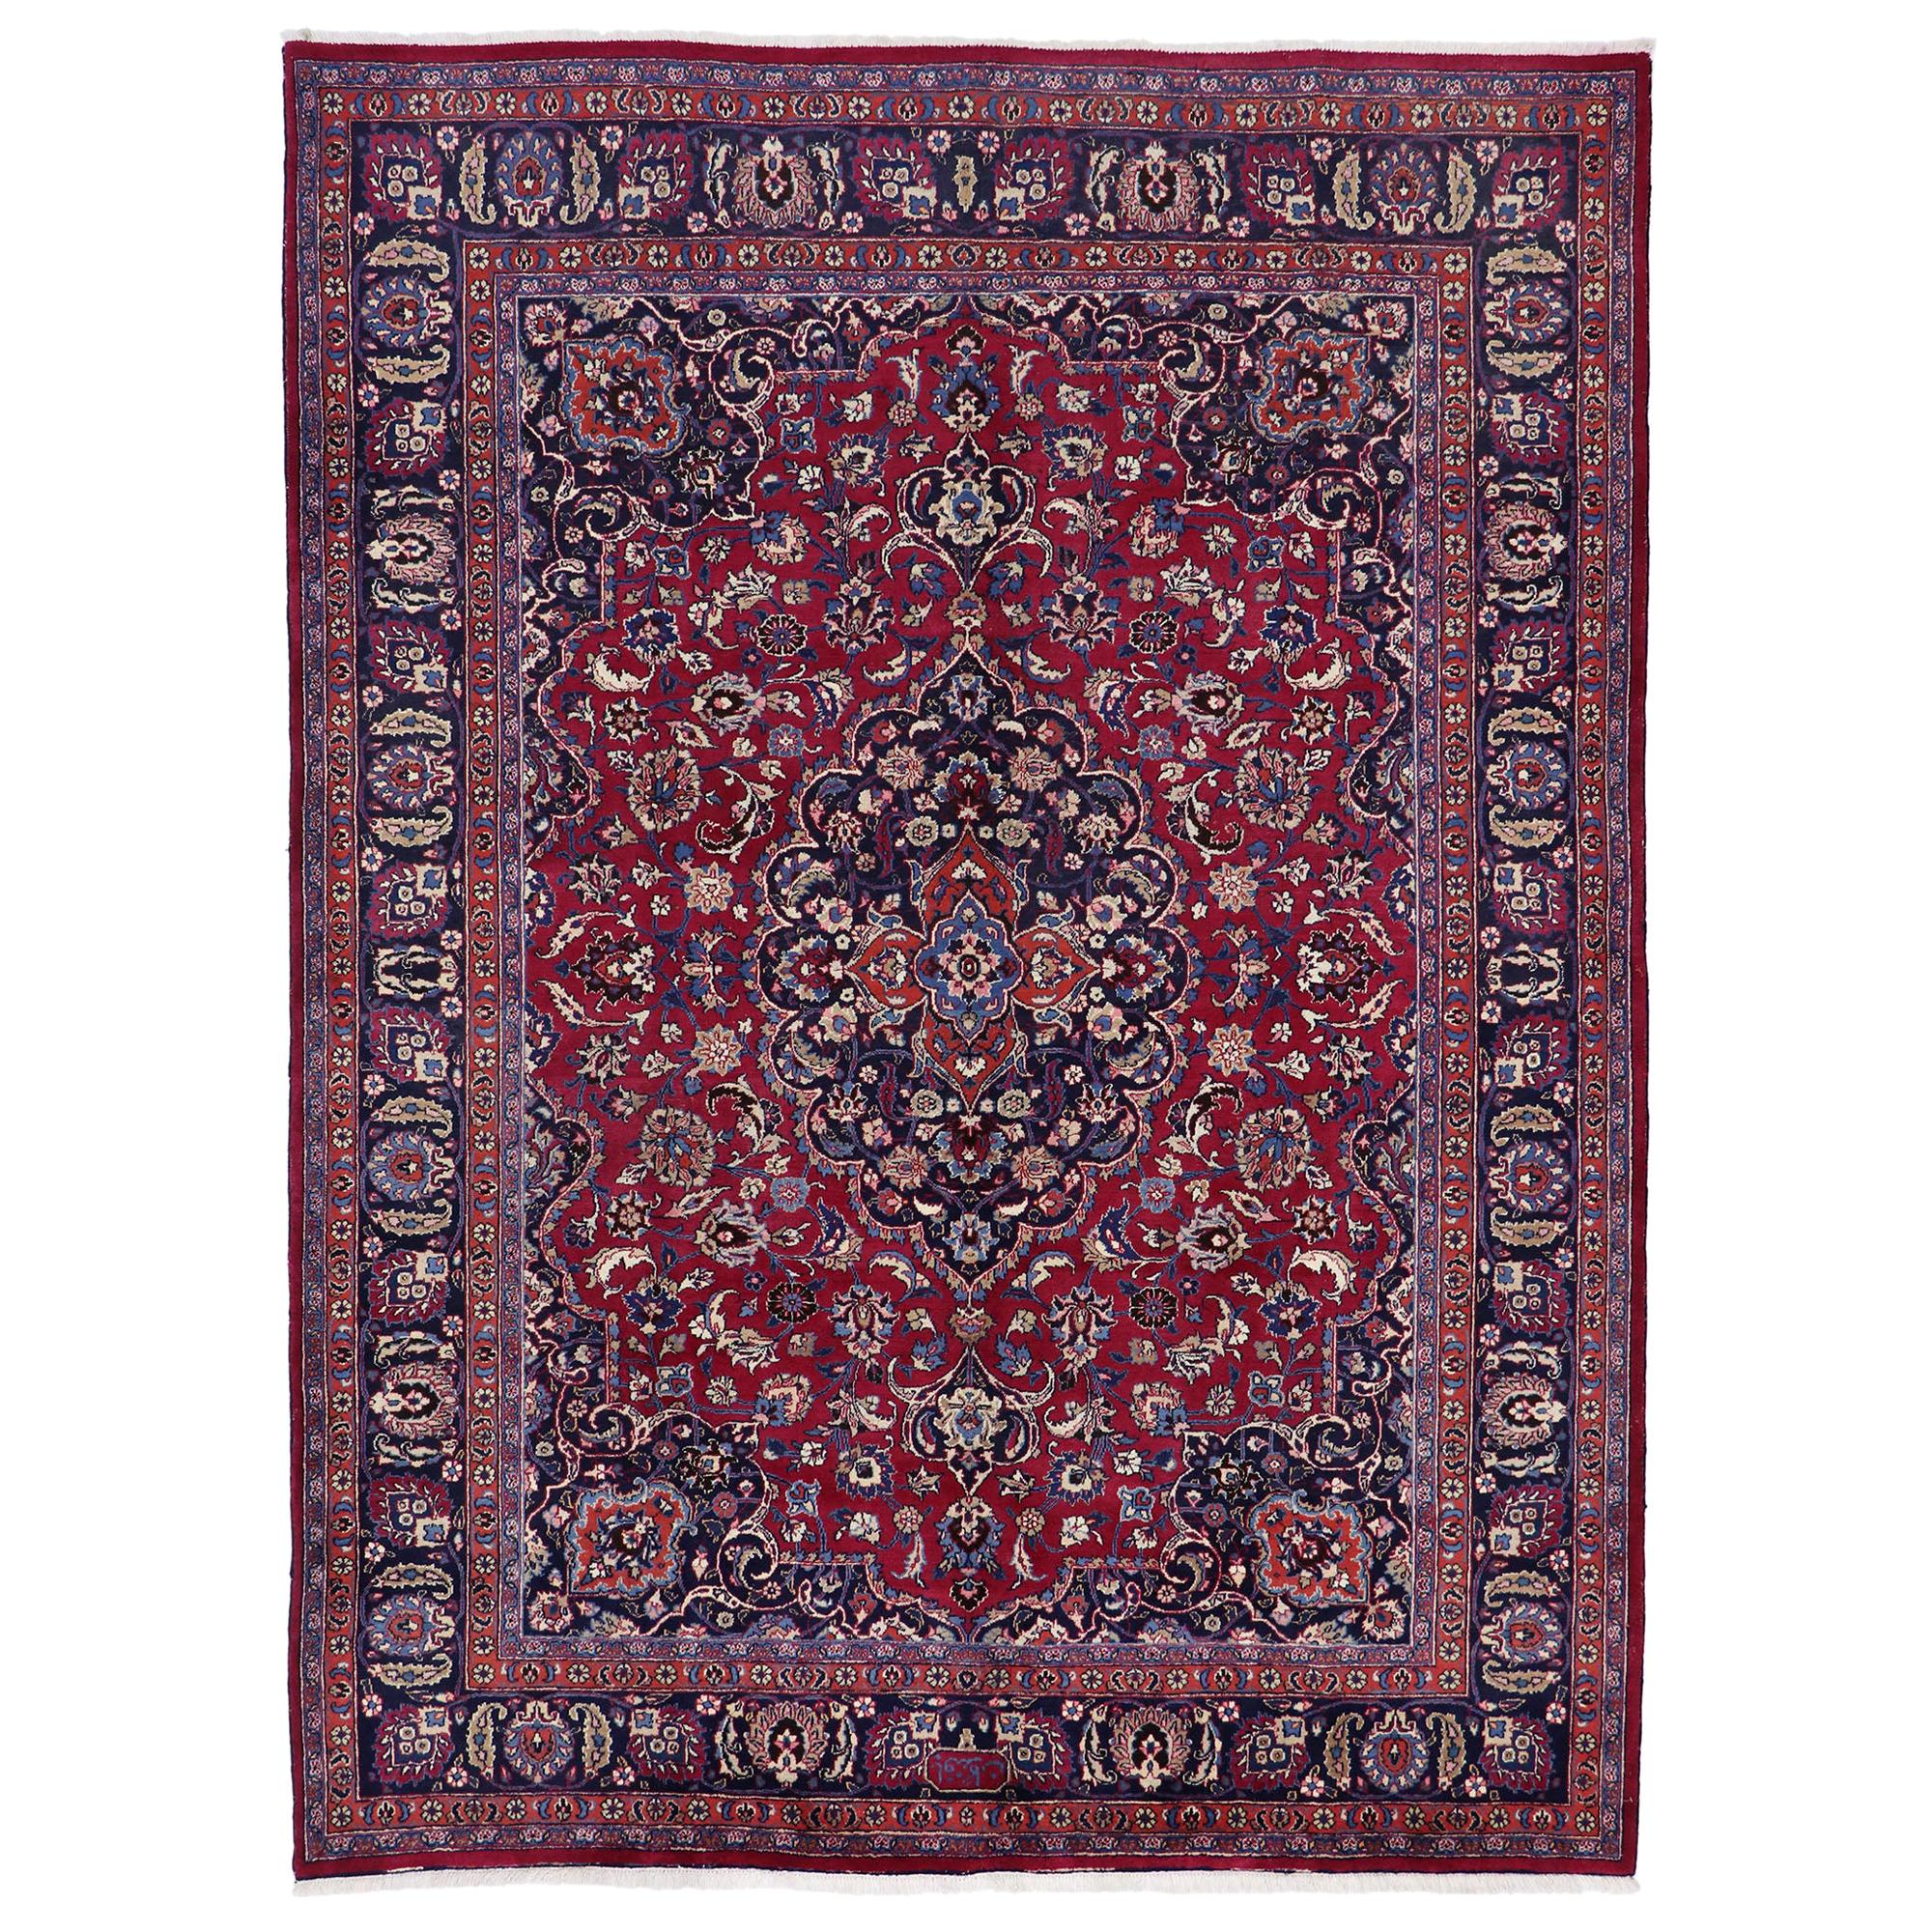 Persischer Mashhad-Teppich im traditionellen viktorianischen Stil, Vintage